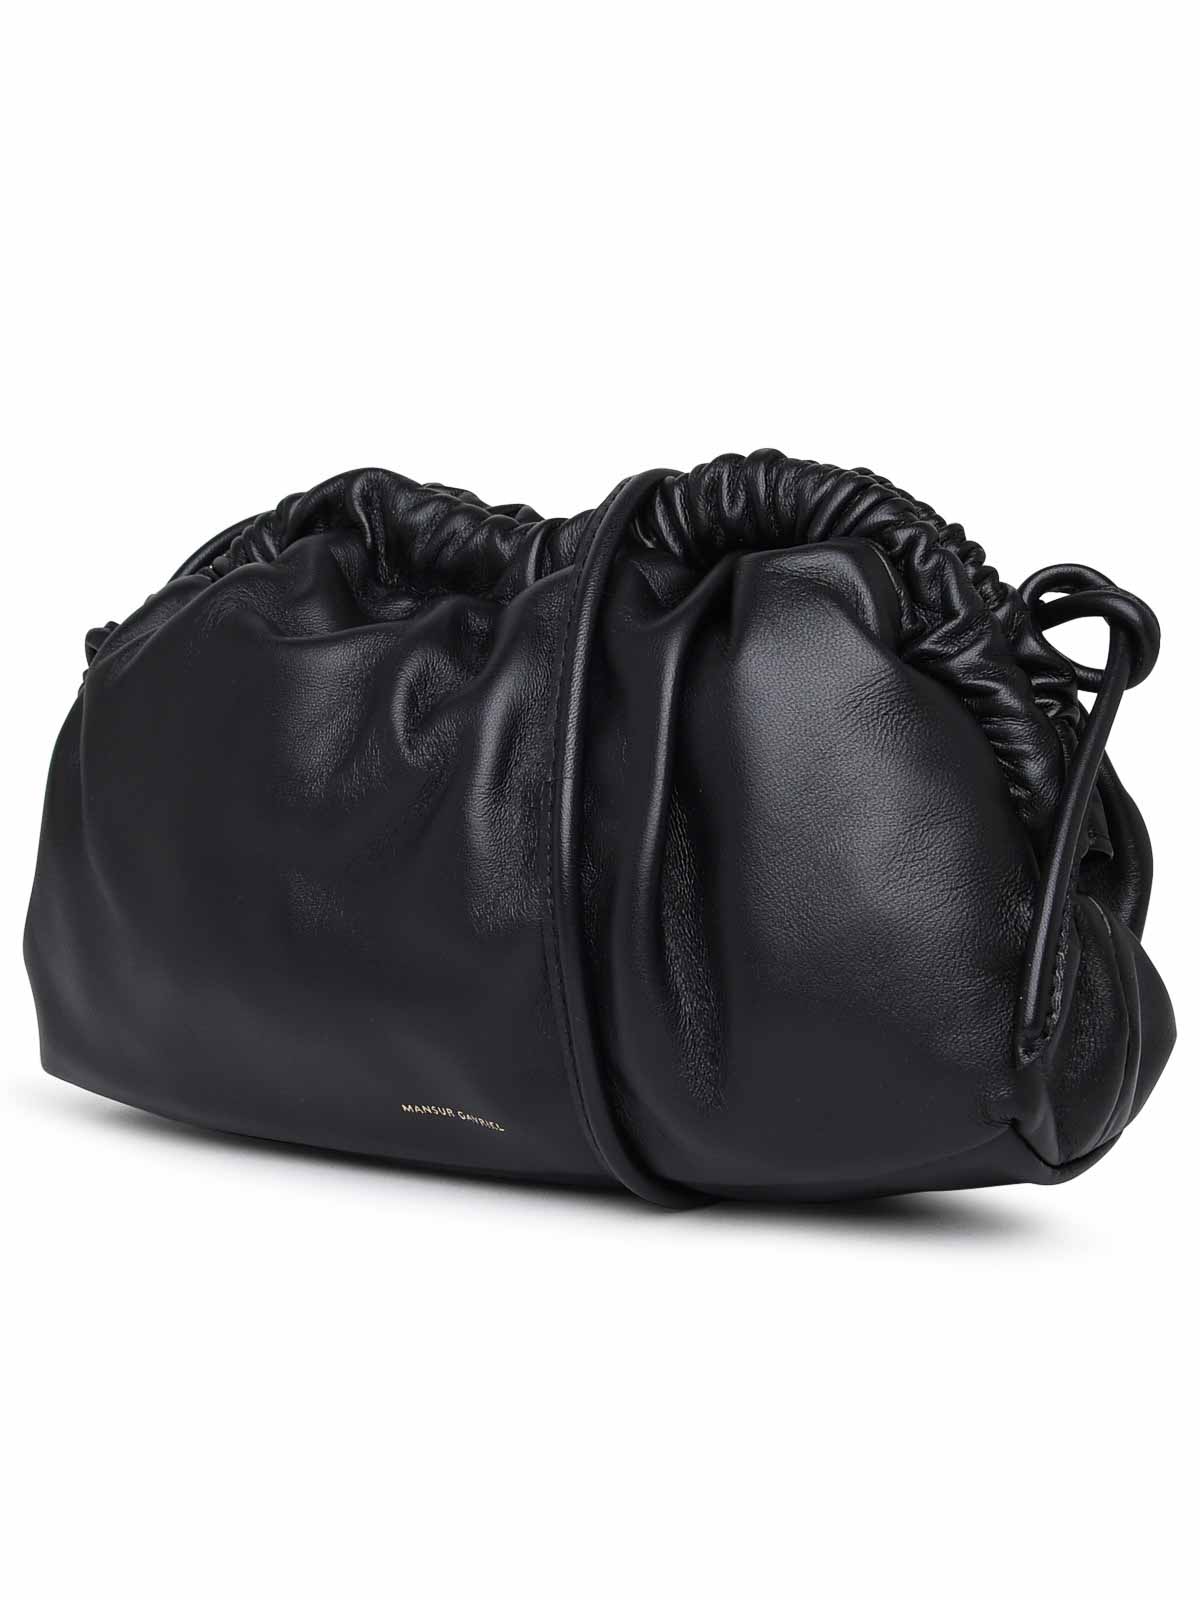 Shop Mansur Gavriel Leather Bag In Black